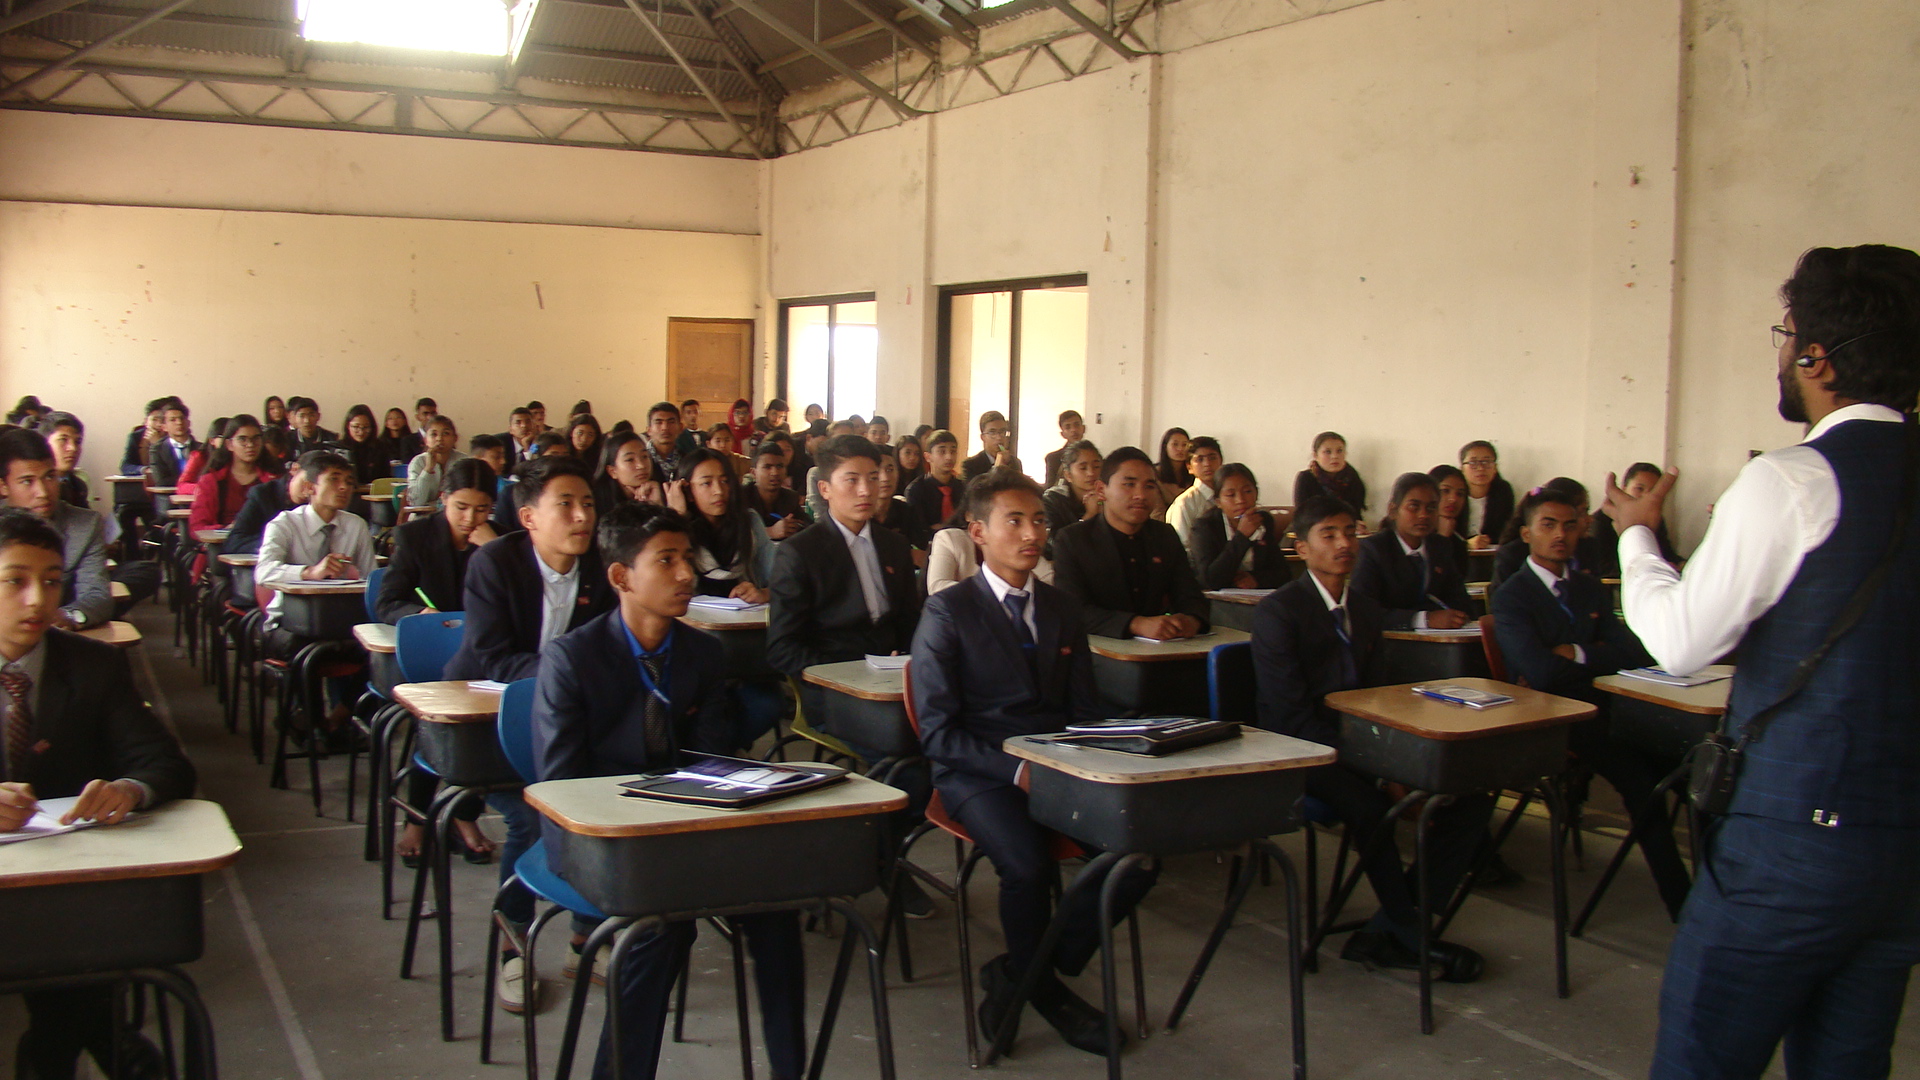 संयुक्त राष्ट्रसंघ महासभाको मोडल काठमाडौंमा सुरु विदेशीसमेत ४०० युवा विद्यार्थी सहभागी